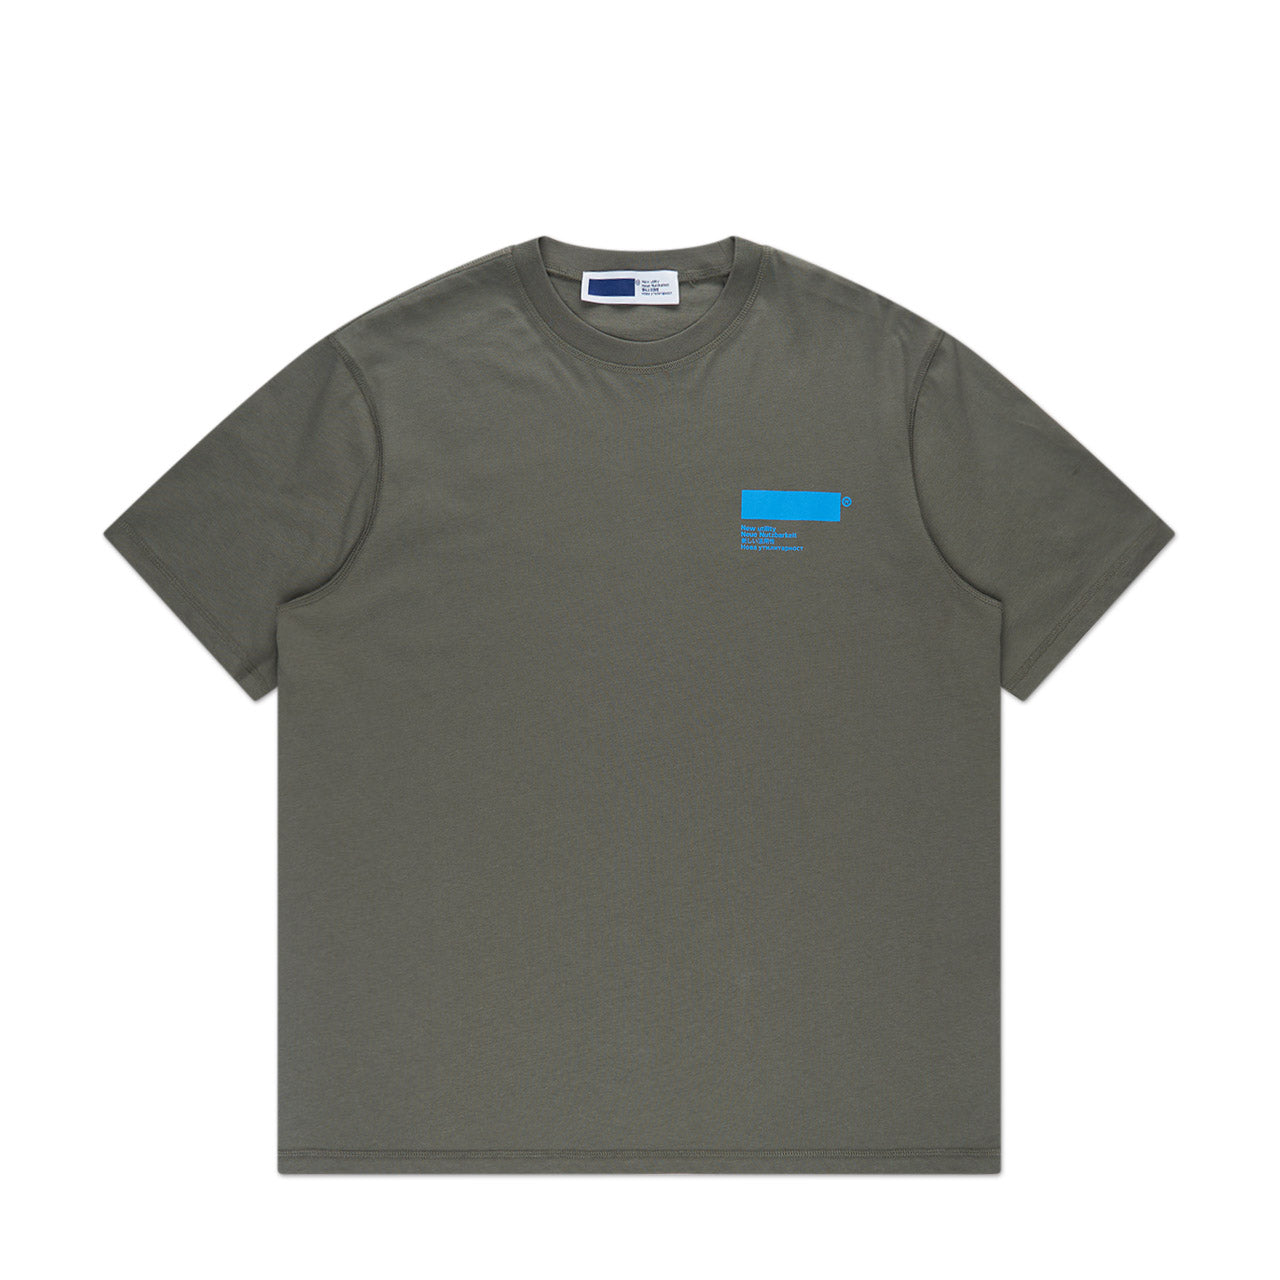 affxwrks standardised t-shirt (soft green)